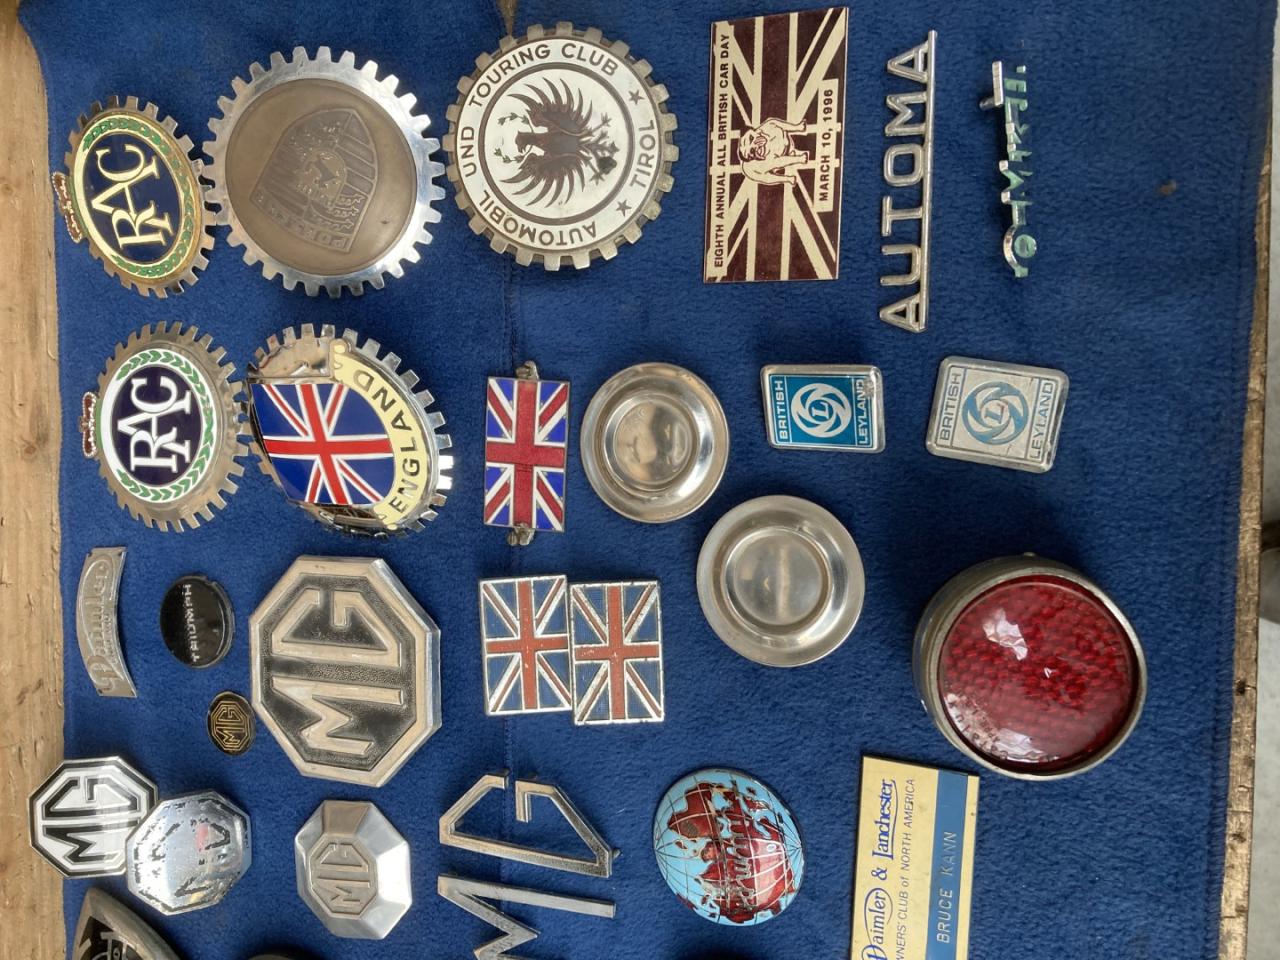 1960 Emblems several classic emblems